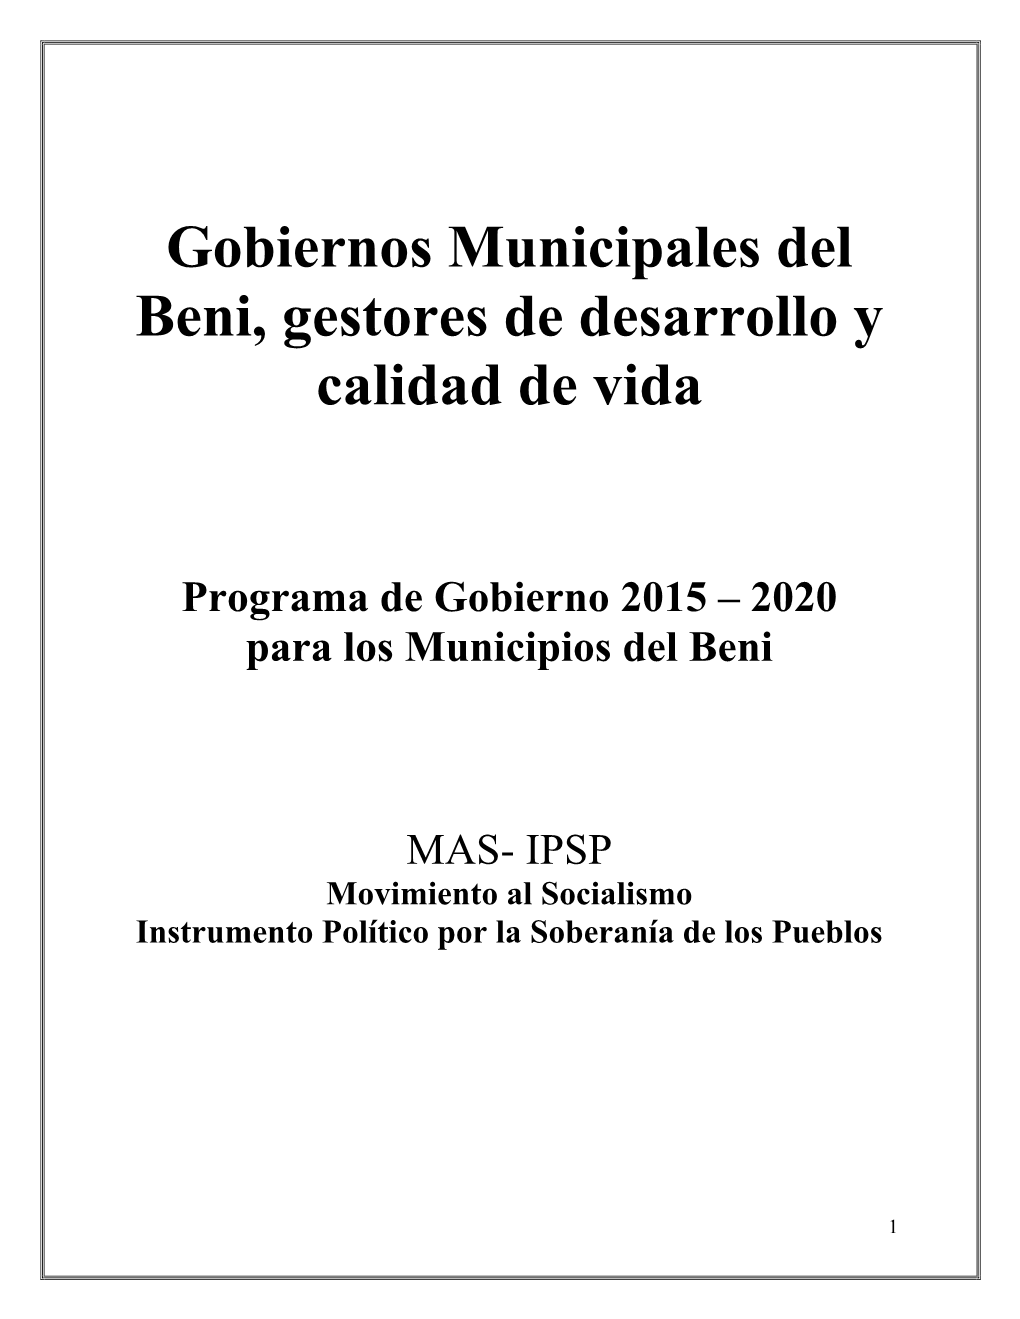 Gobiernos Municipales Del Beni, Gestores De Desarrollo Y Calidad De Vida